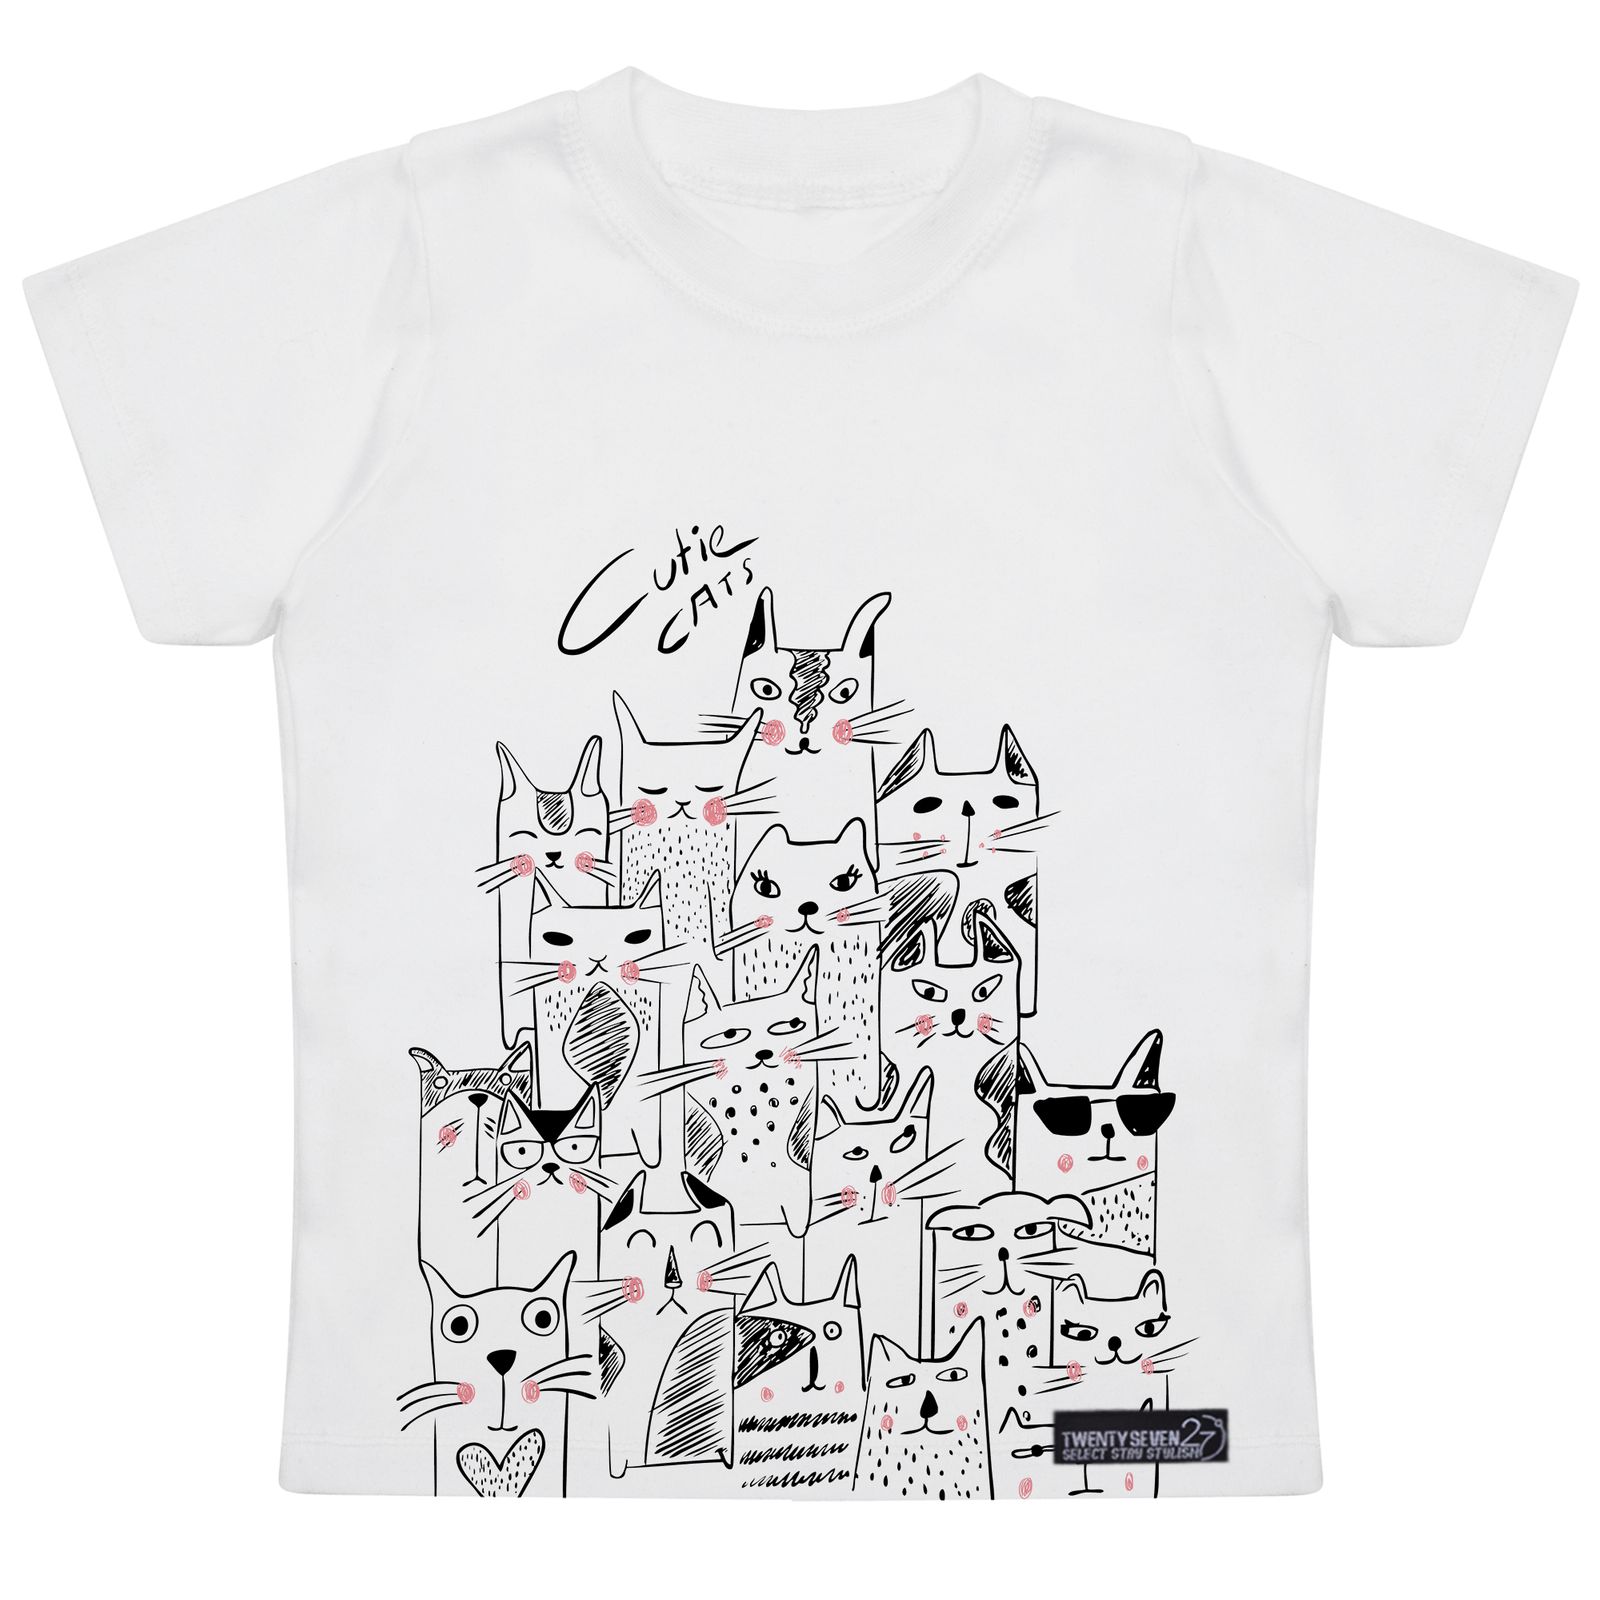 تی شرت آستین کوتاه پسرانه 27 مدل Cute Cats کد MH930 -  - 4